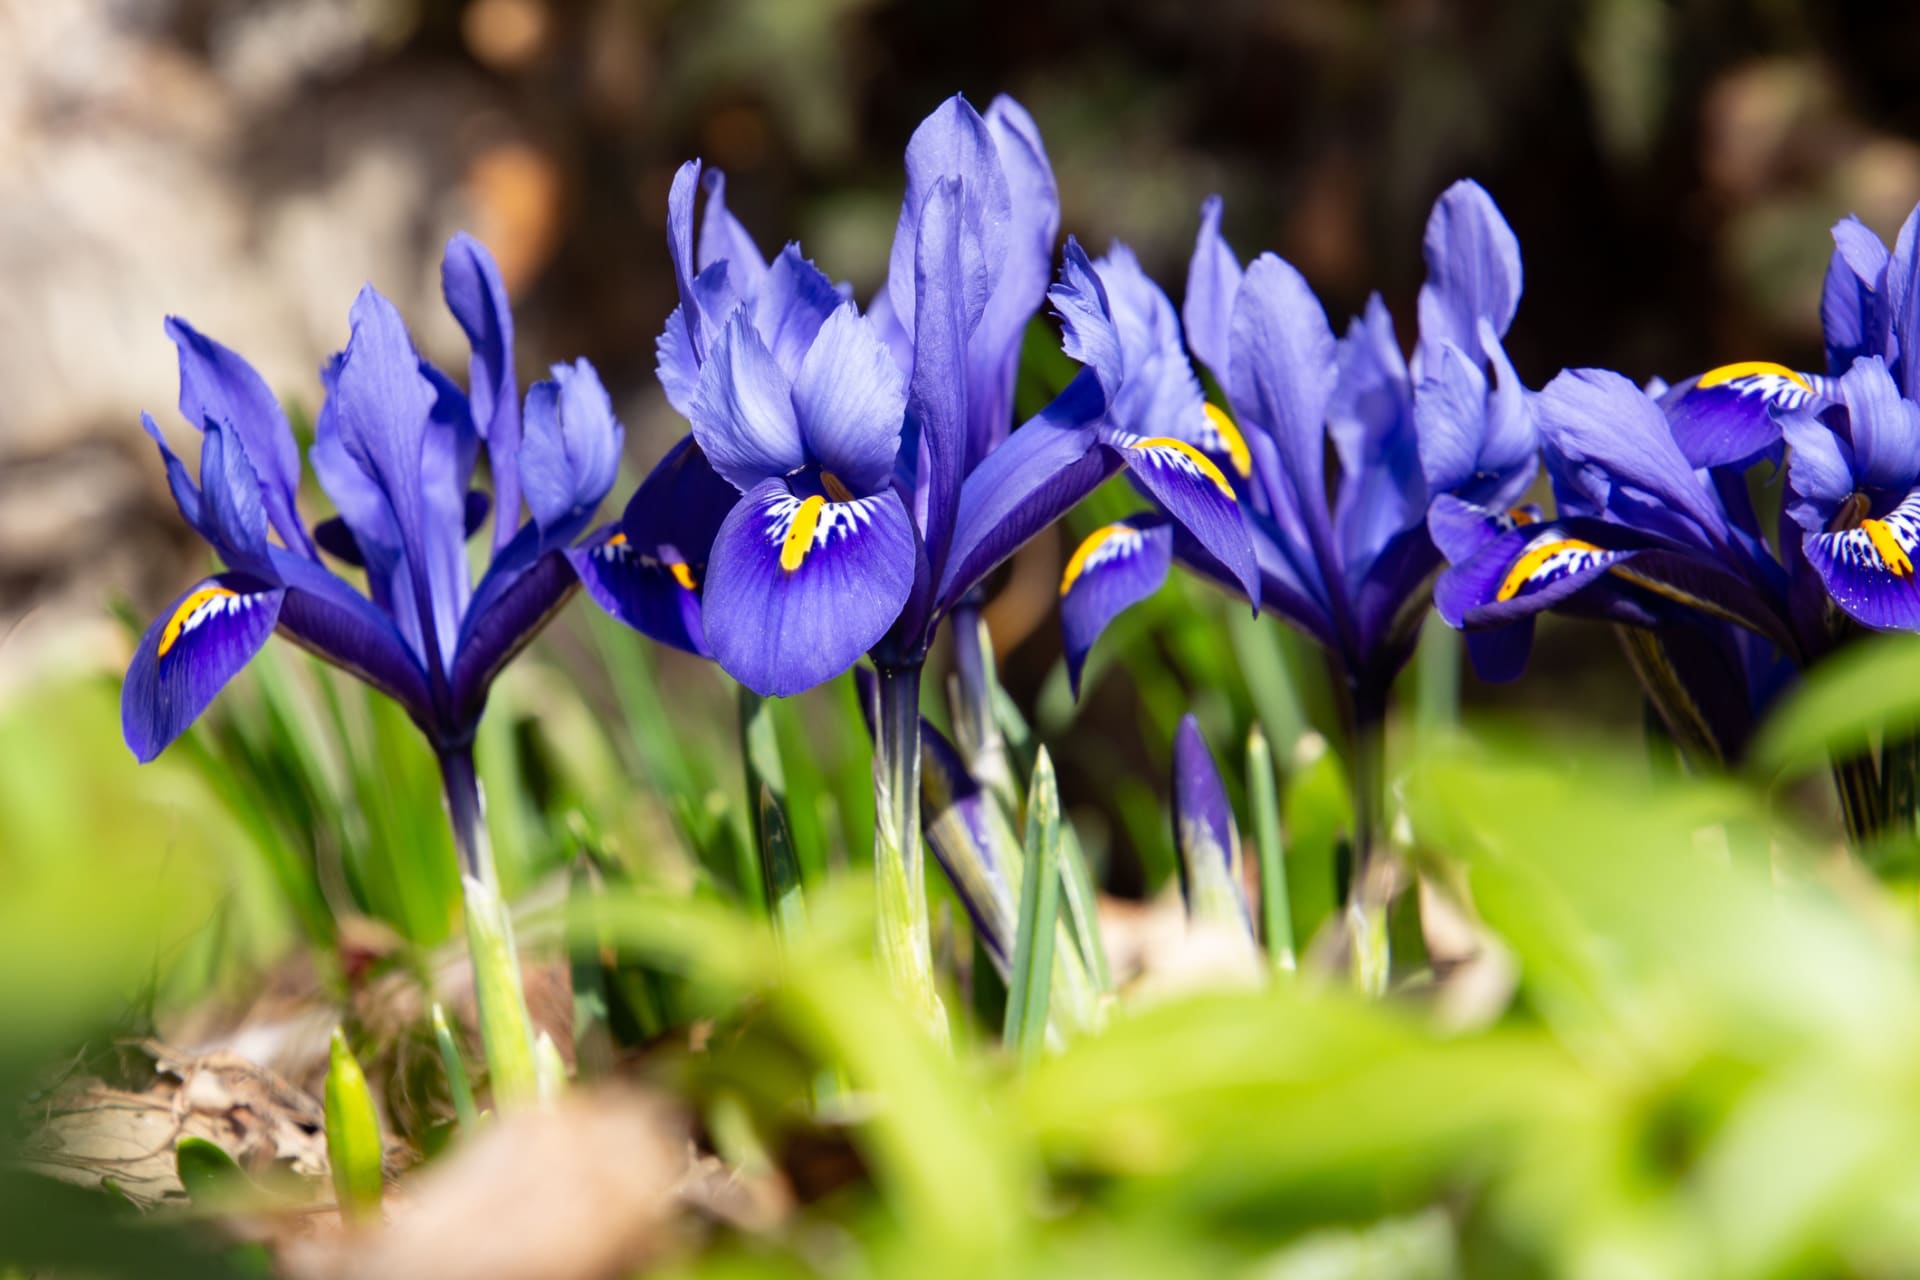 Kosatec nebo taky kosateček má nejčastěji květy modré, fialová a purpurové se žlutou skvrnou uvnitř každého okvětního plátku; kvete od konce února do dubna.